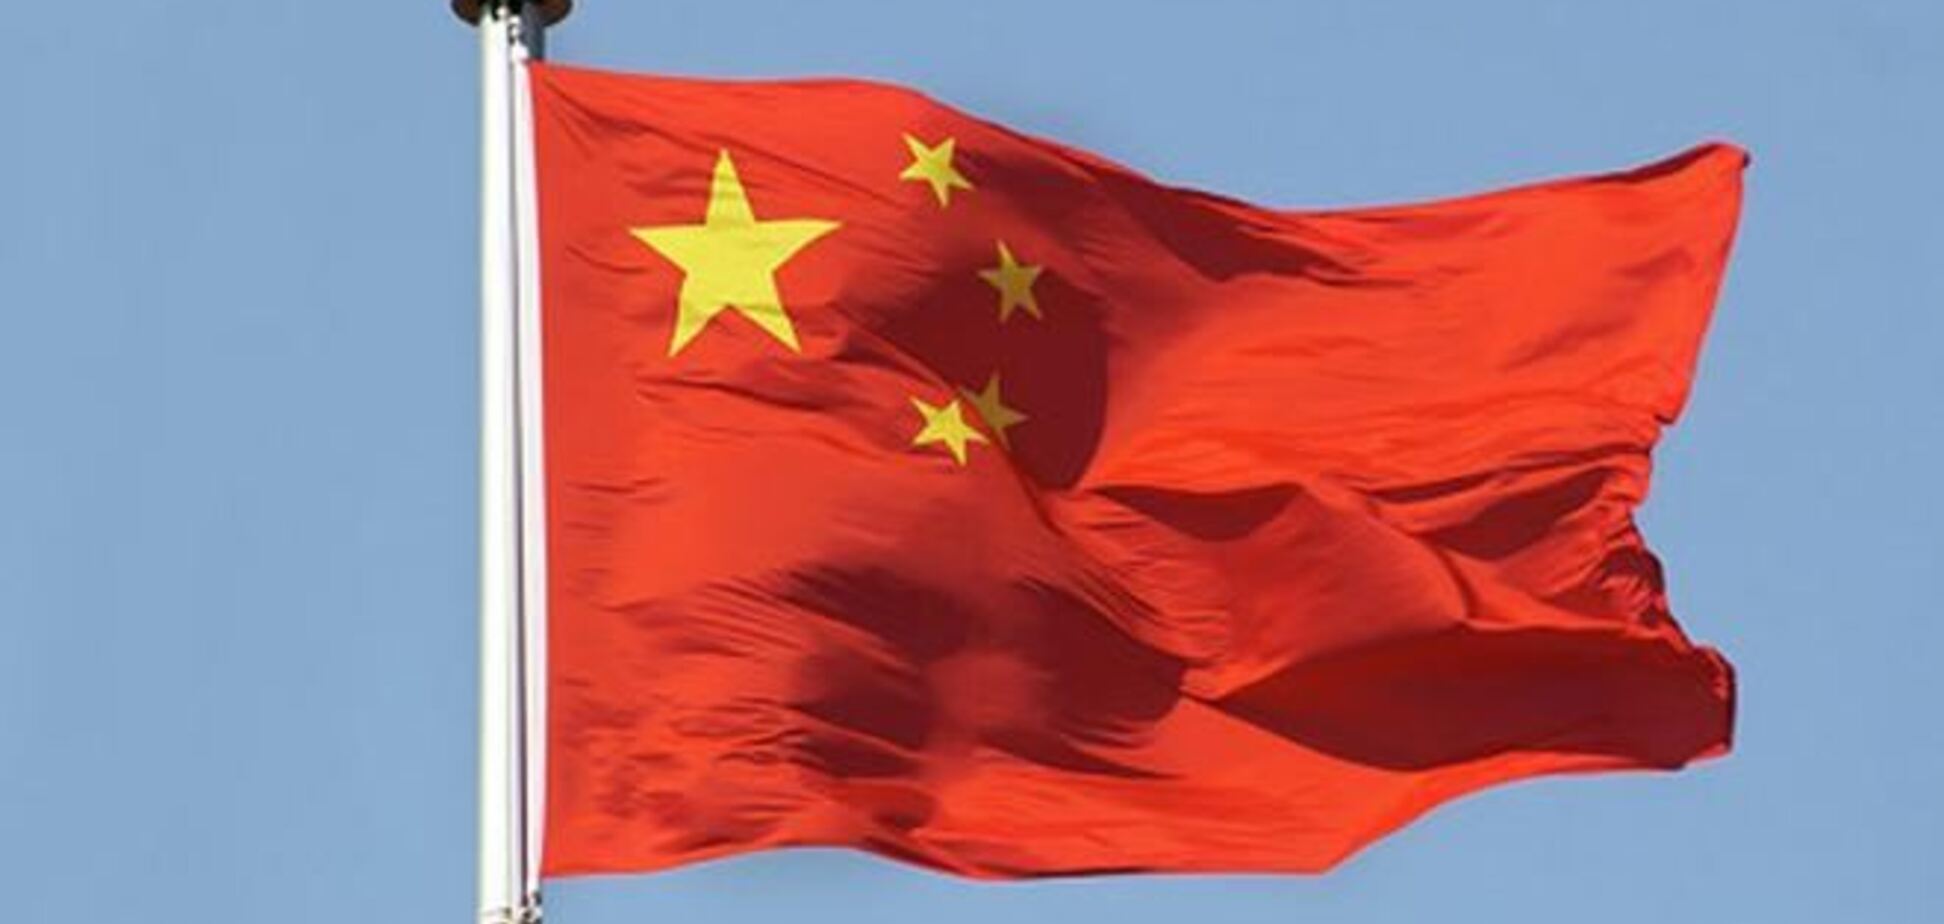 Комментируя аннексию Крыма, Китай заявил о своем уважении суверенитета